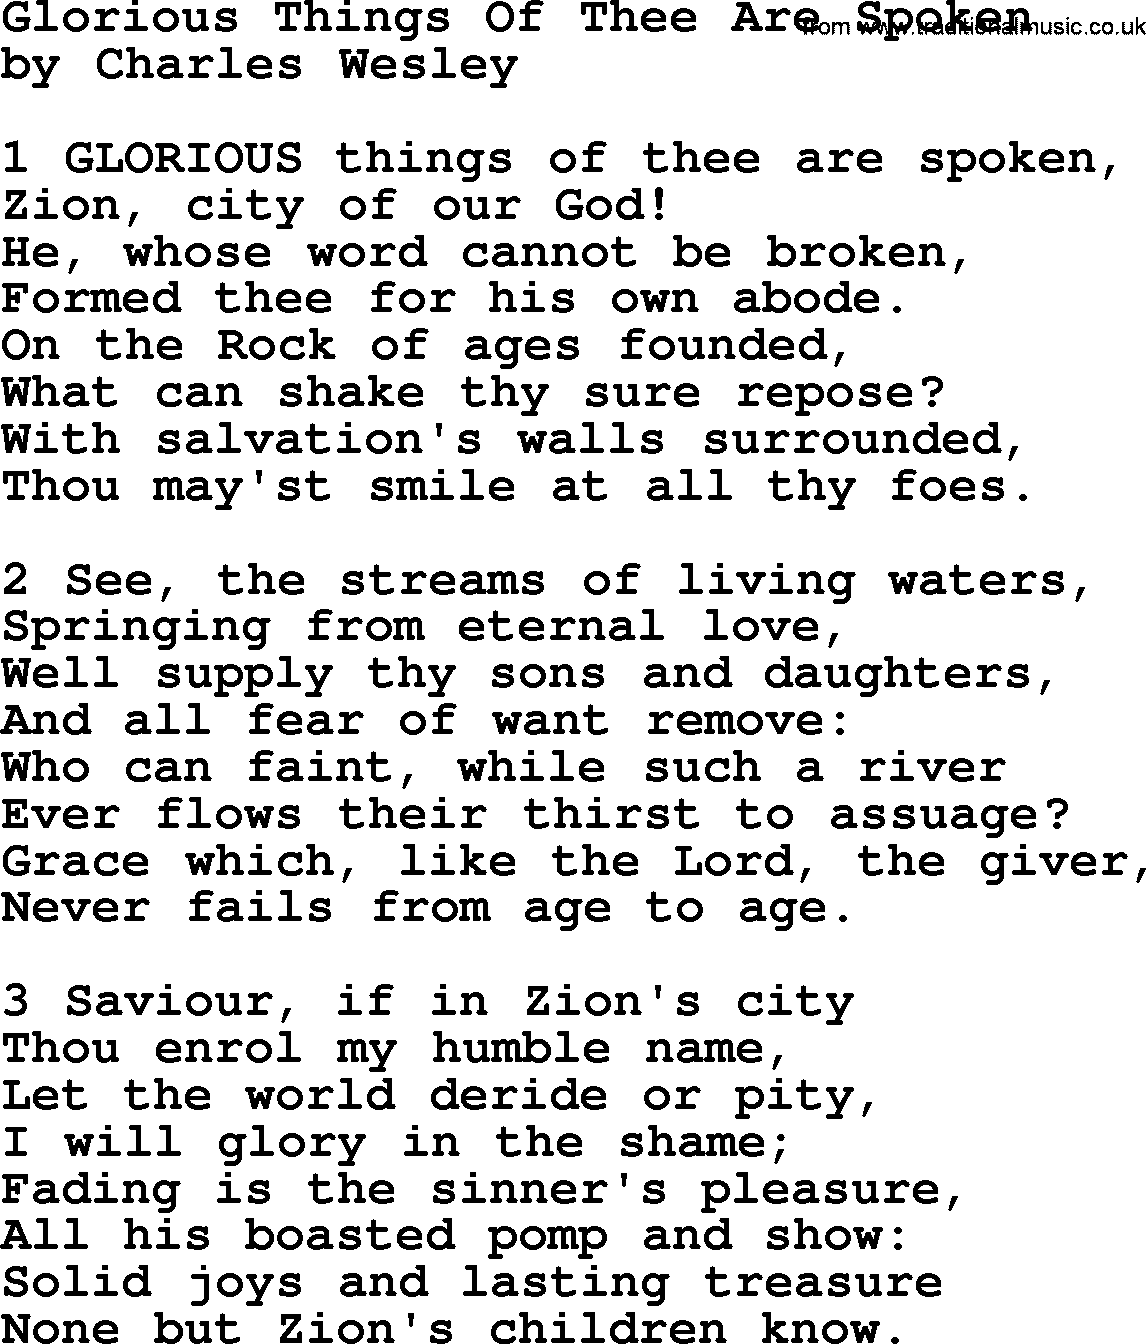 Charles Wesley hymn: Glorious Things Of Thee Are Spoken, lyrics